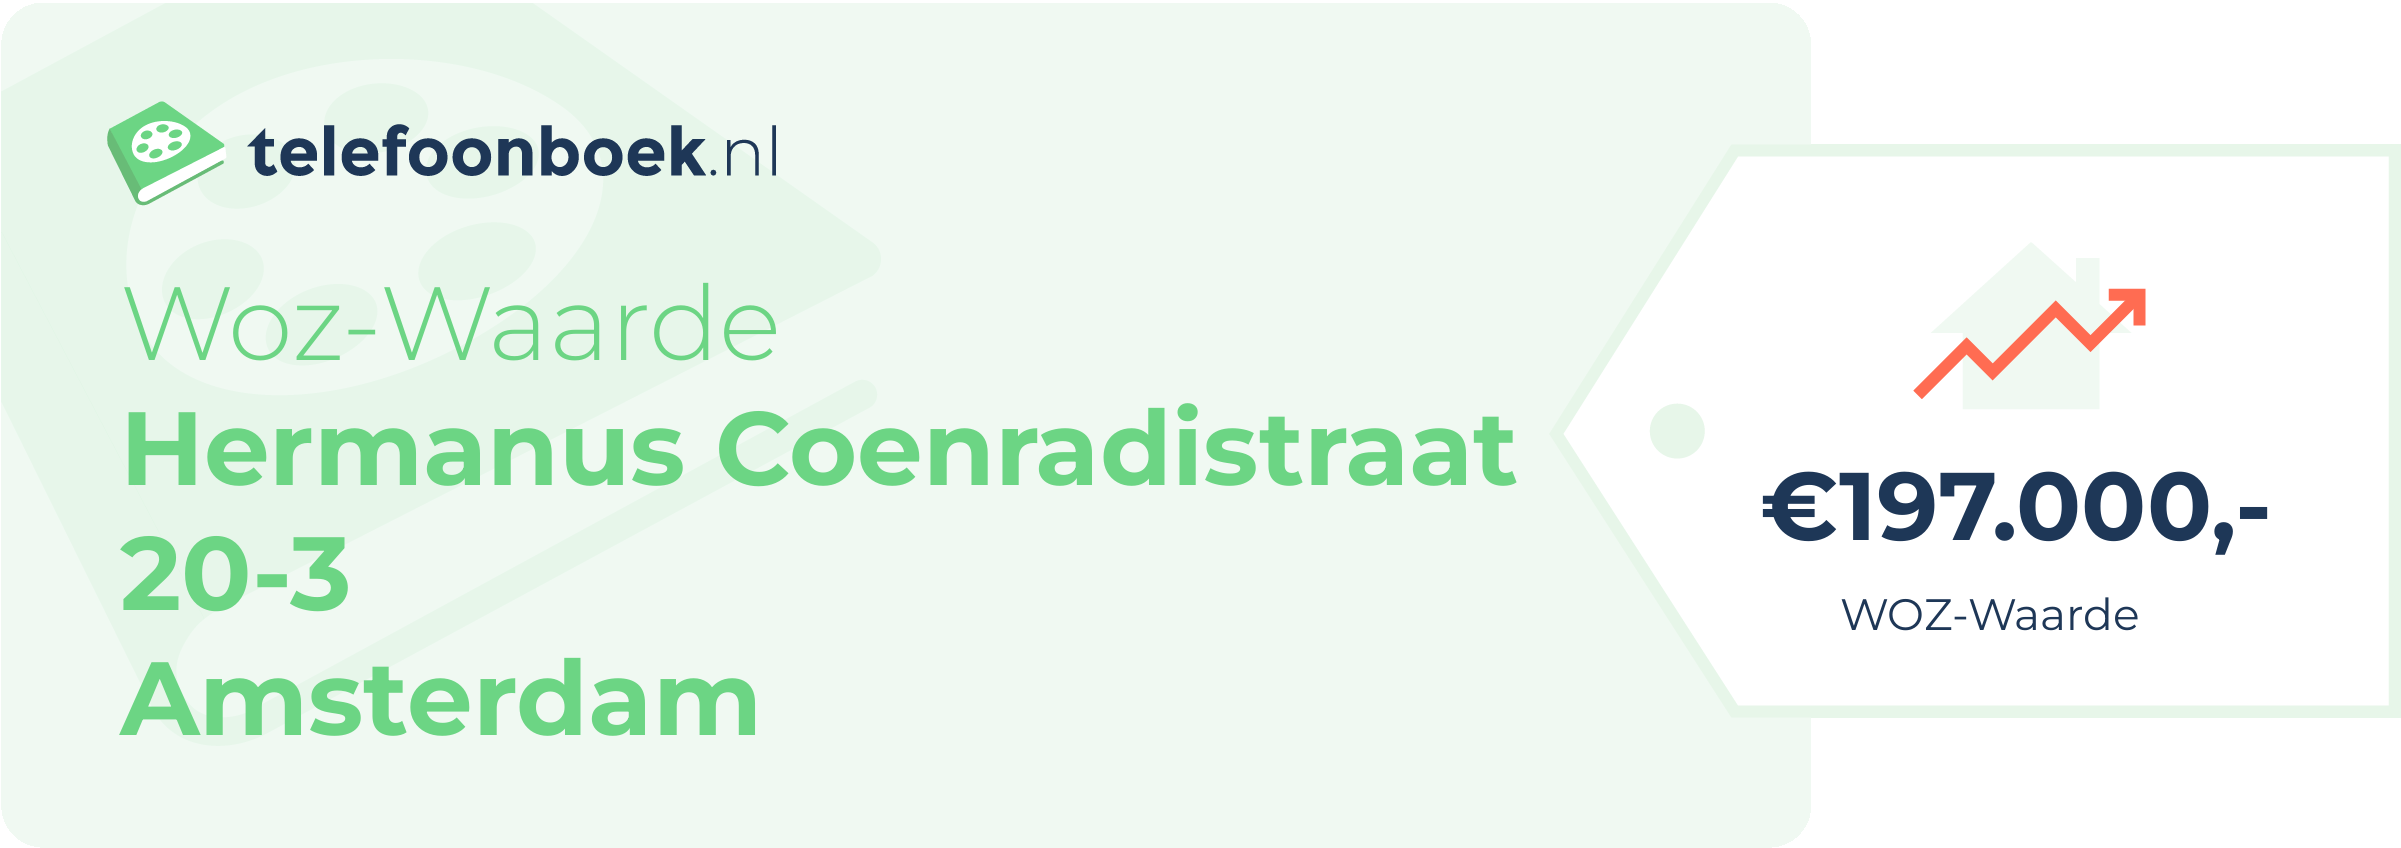 WOZ-waarde Hermanus Coenradistraat 20-3 Amsterdam